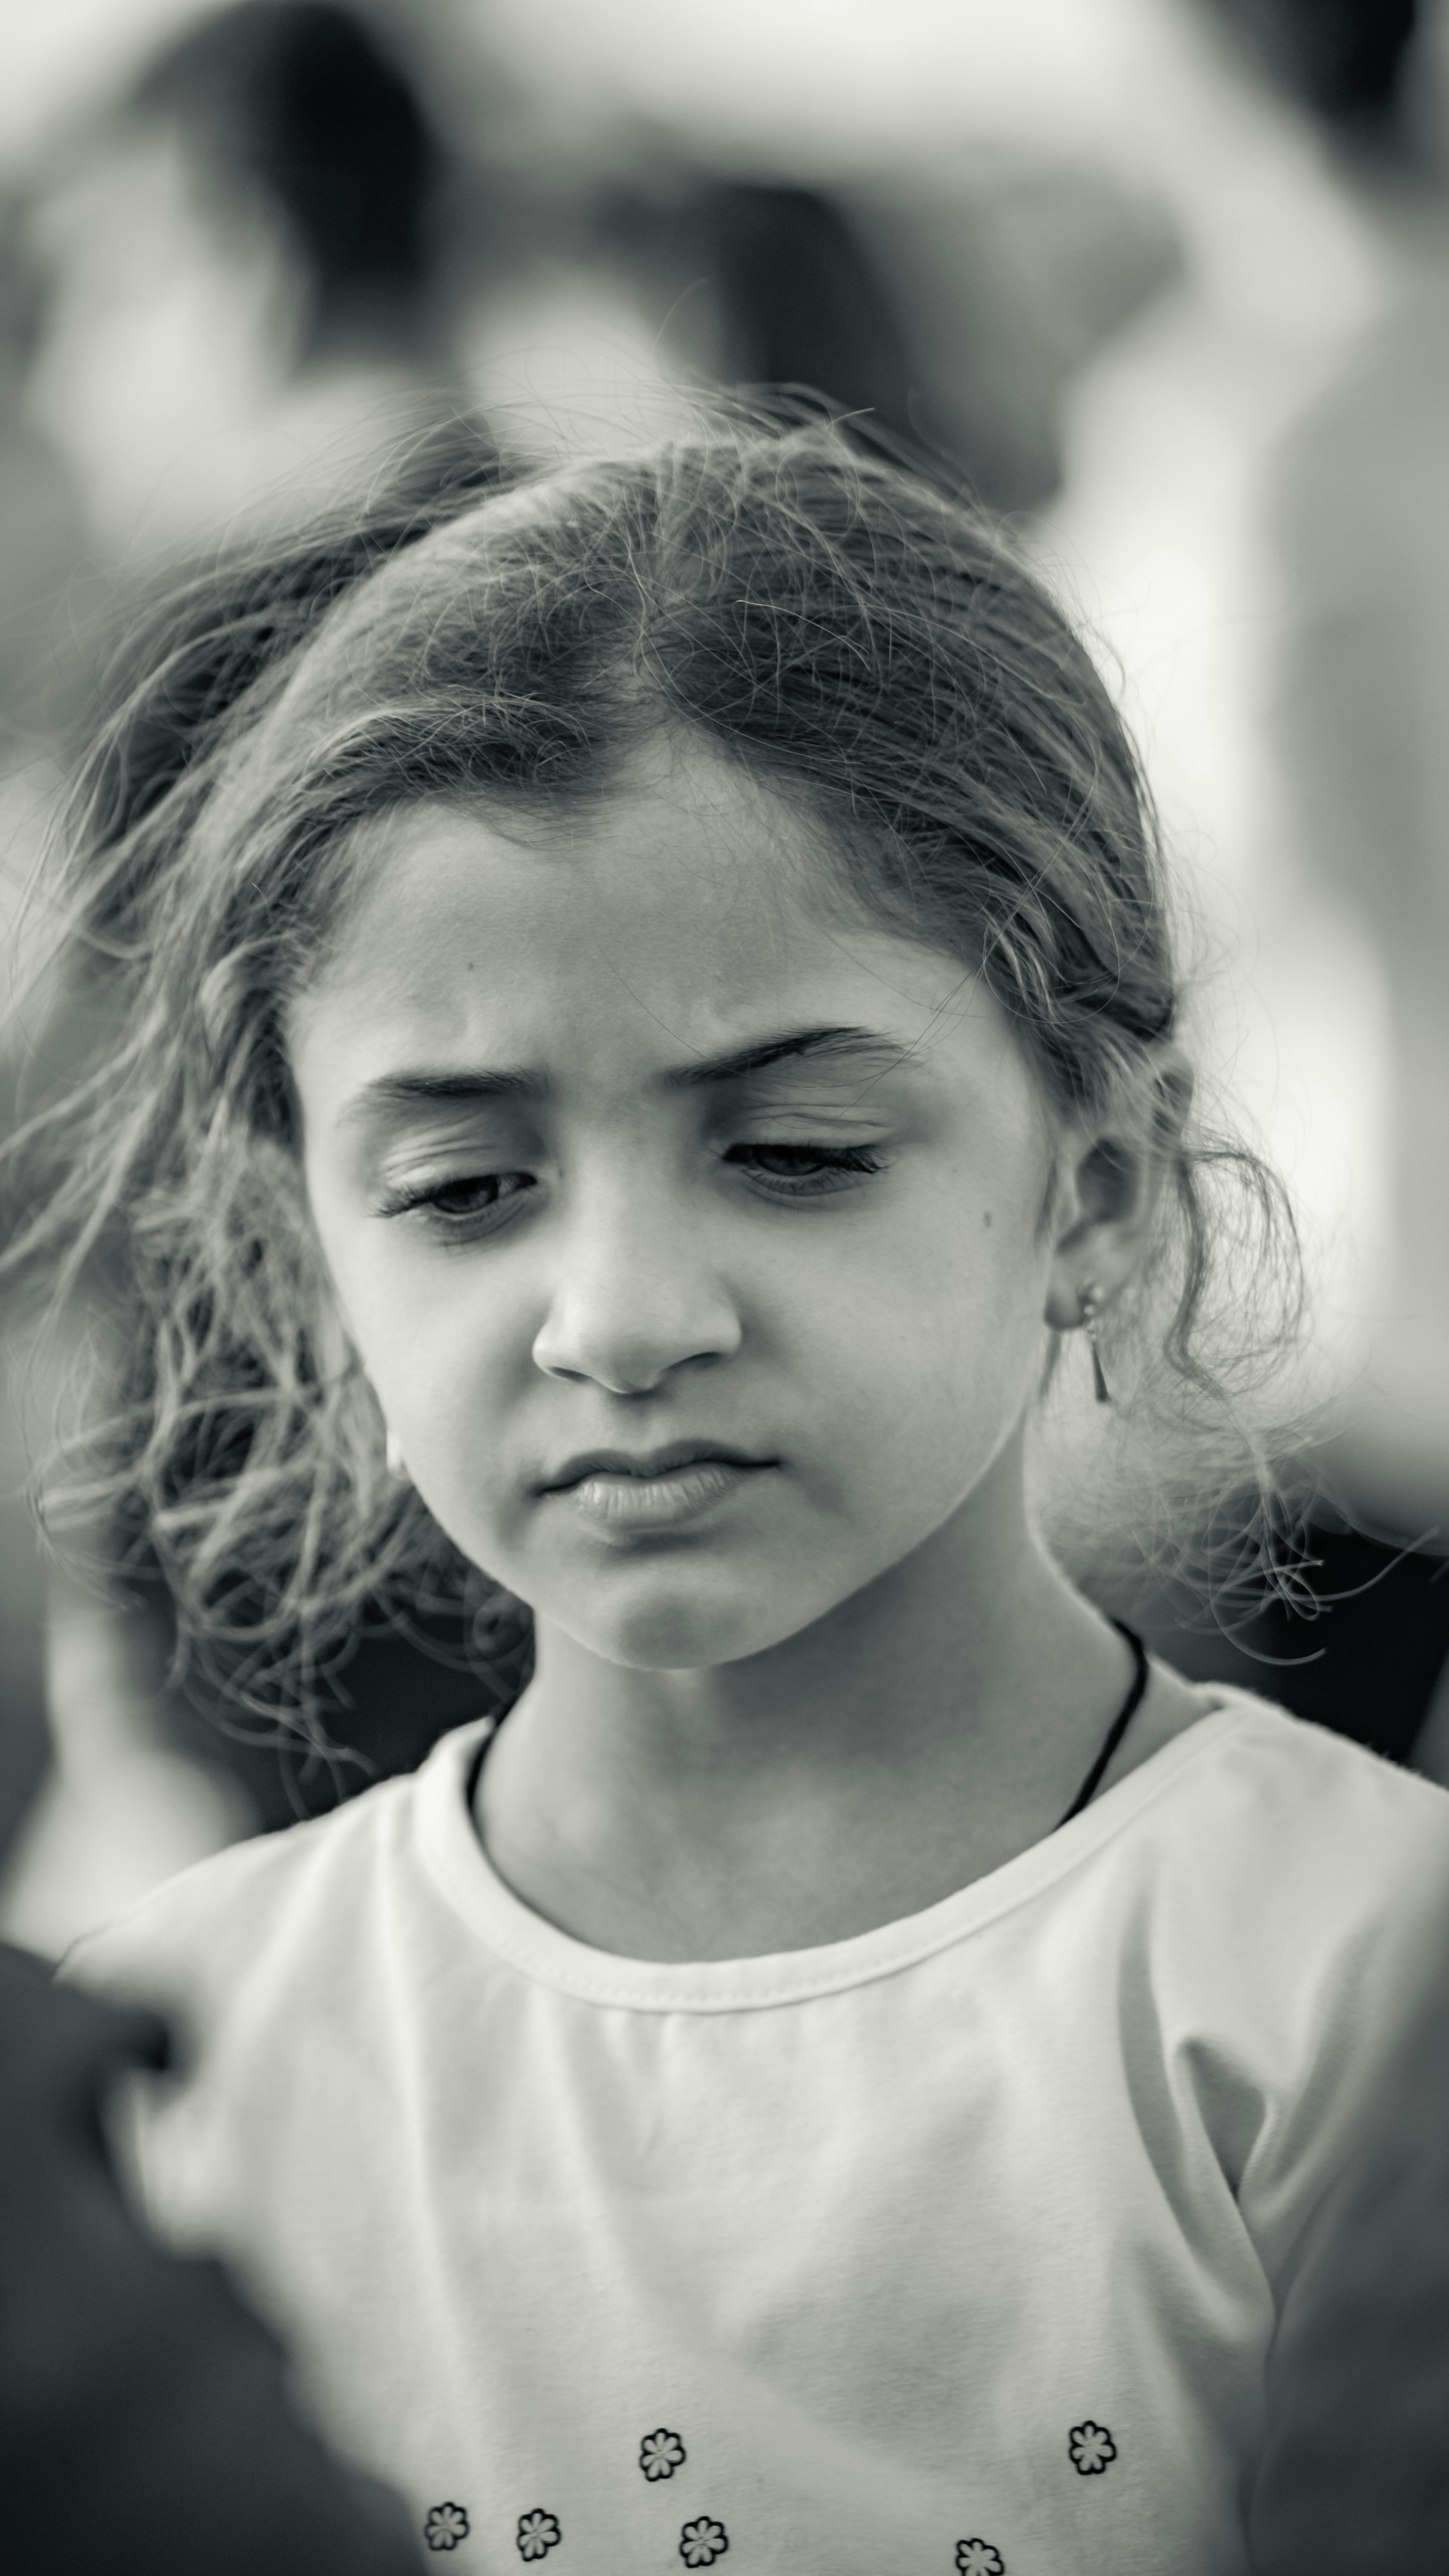 An unhappy little girl | Source: Pexels